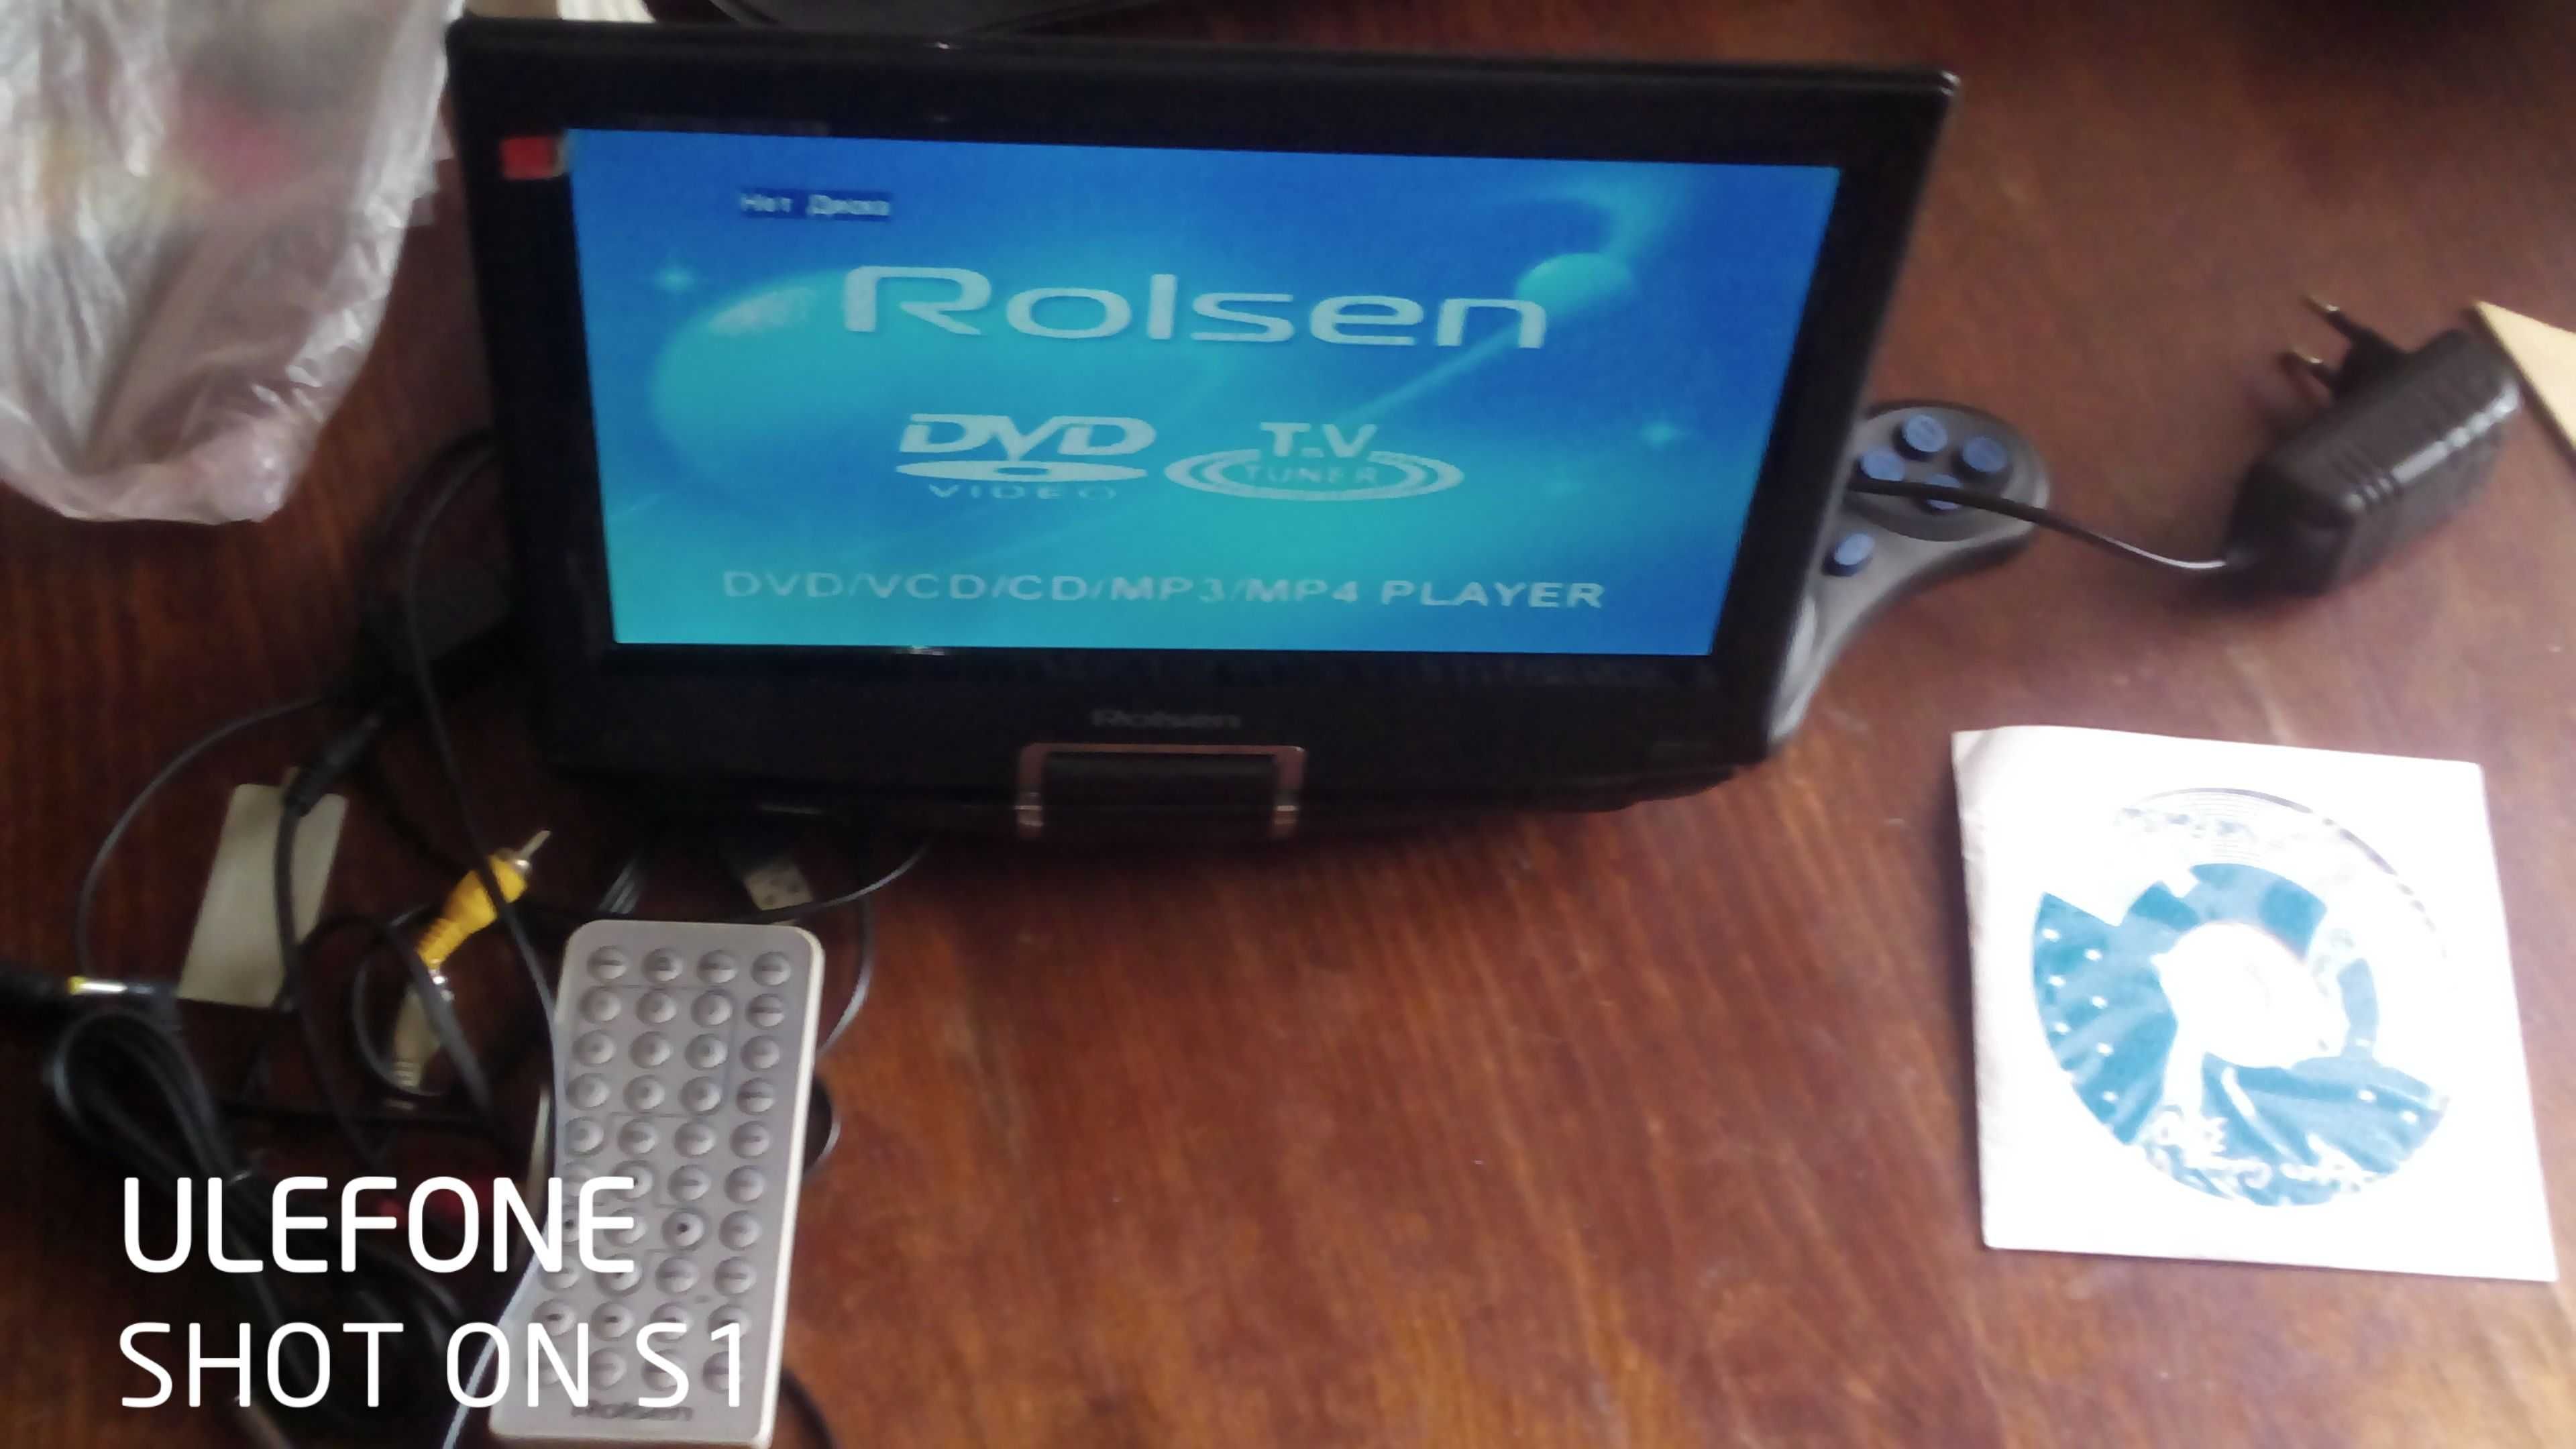 DVD,видео плеер"Rolsen rpd-10d09g"(радио, телевизор, игровая консоль).